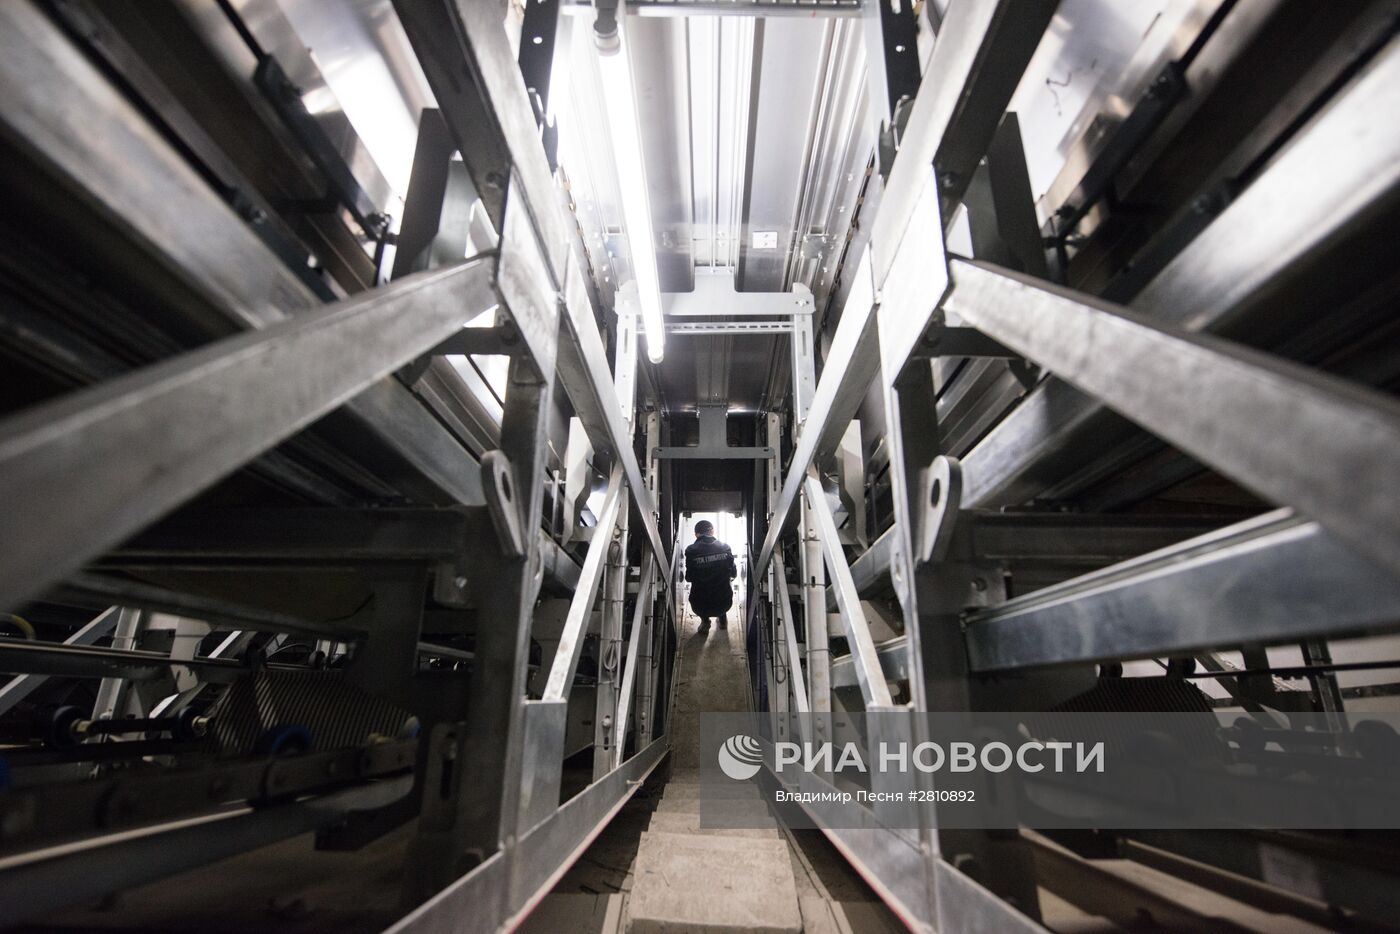 Мэр Москвы С.Собянин посетил строящуюся станцию метро "Деловой центр"